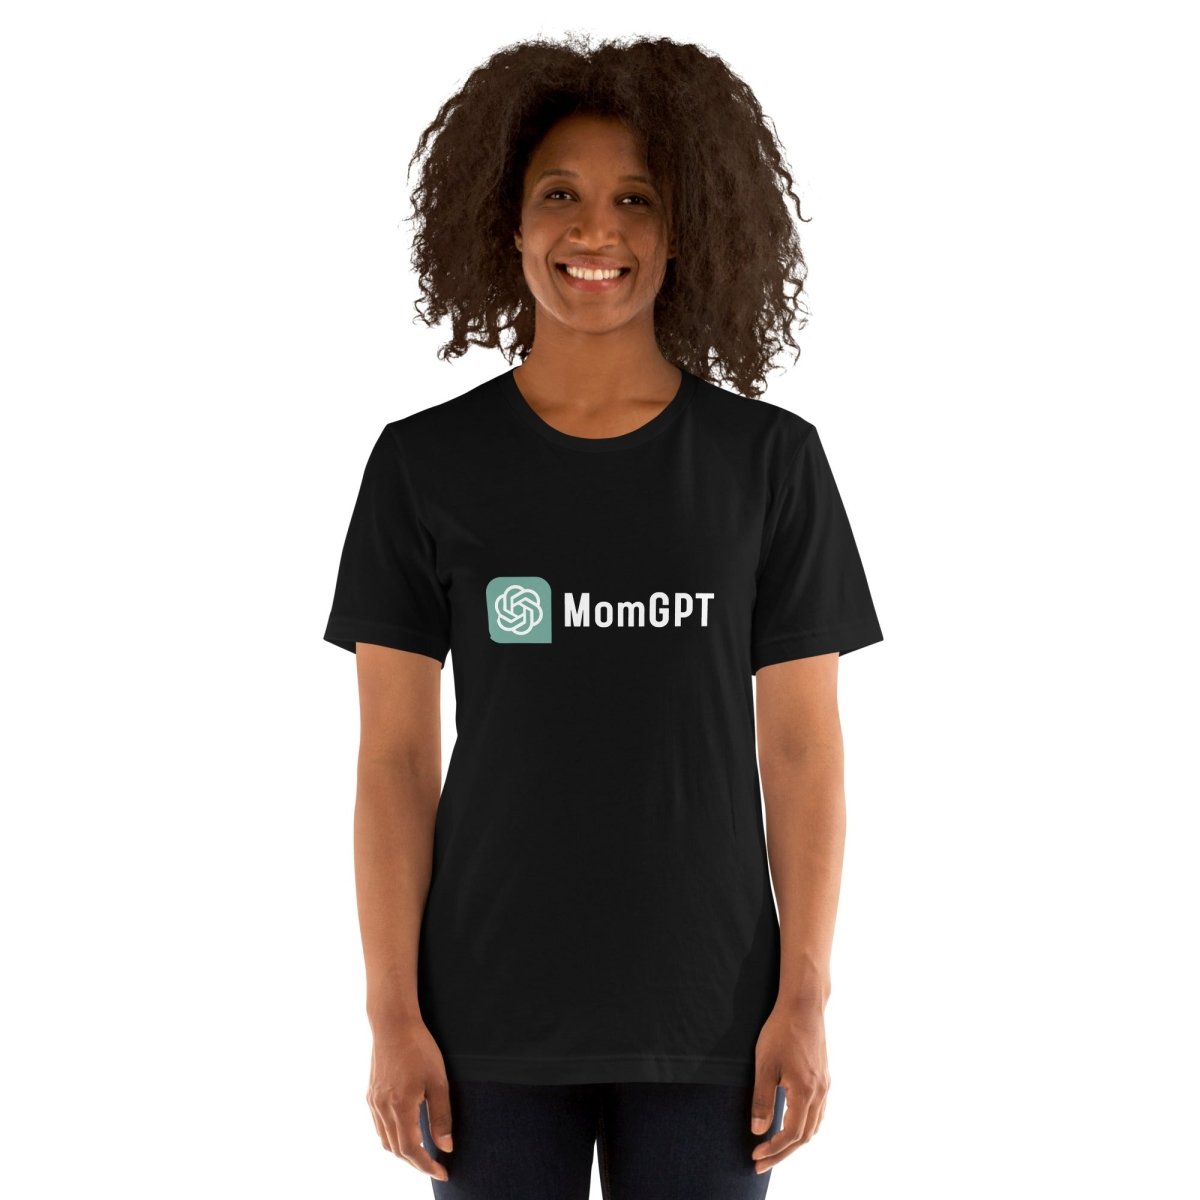 MomGPT T - Shirt (unisex) - Black - AI Store